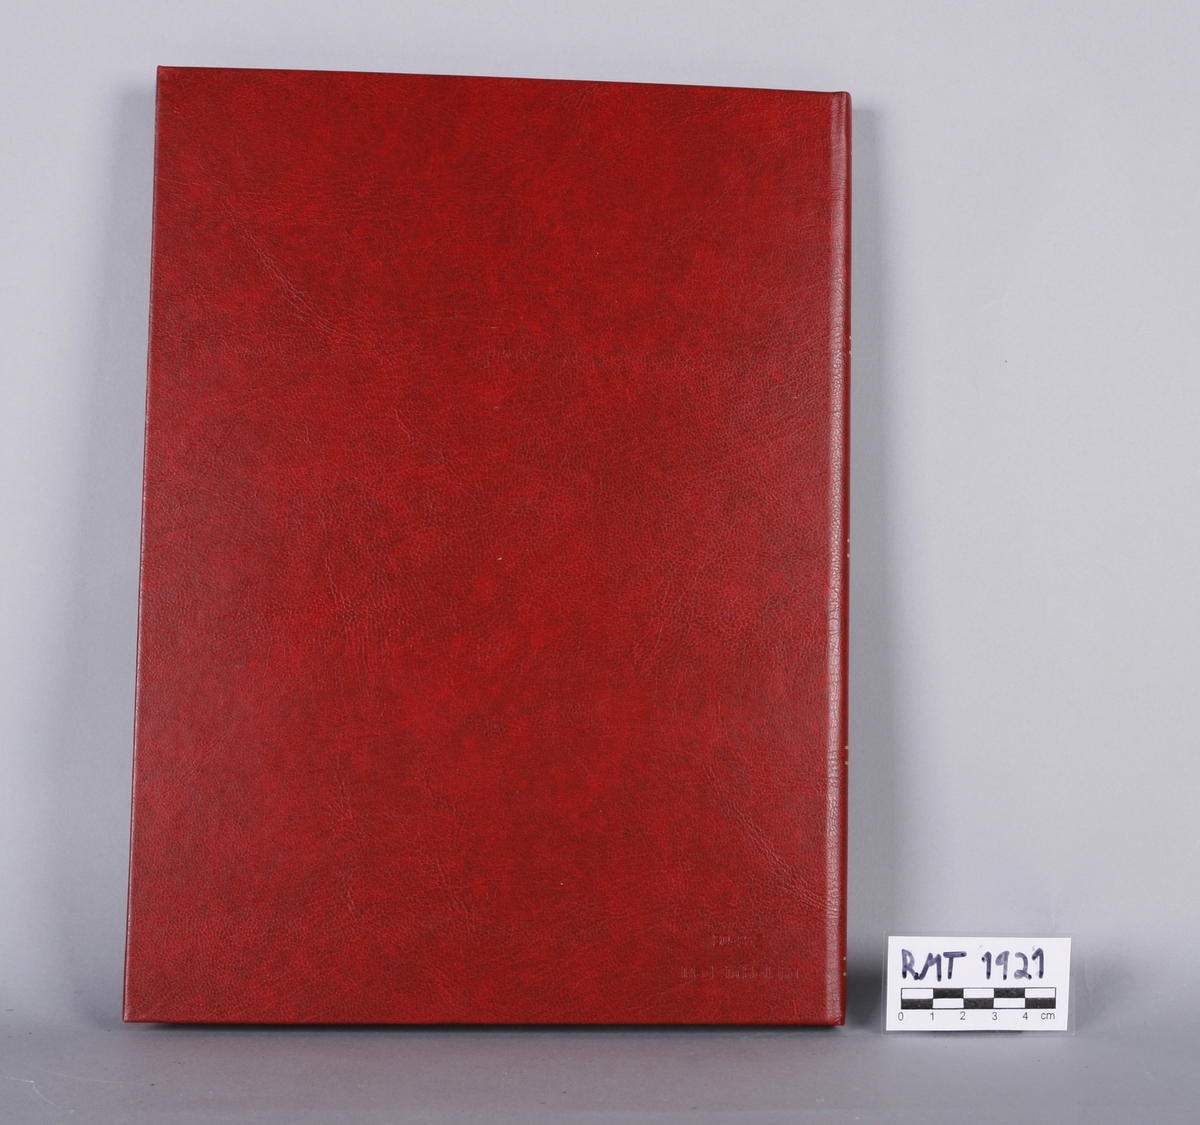 Rød album med lommer for frimerker. Innholder frimerker med musikkmotiver, førstedagsbrev mm.